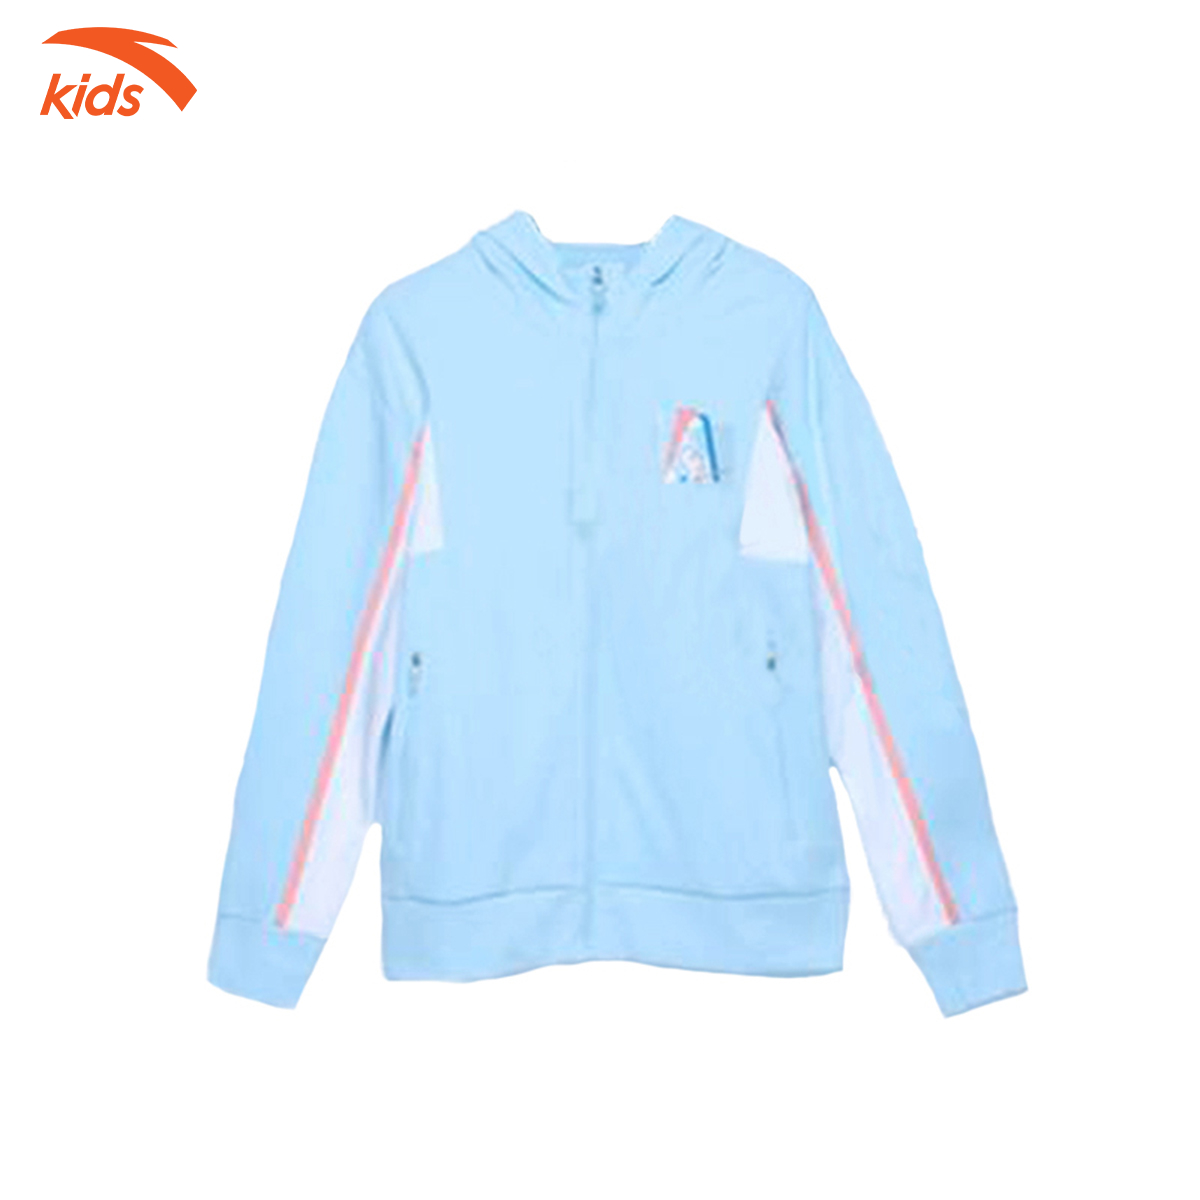 Áo khoác nỉ bé gái Anta Kids kiểu dáng hoodie, chất liệu cao cấp 362135735-1